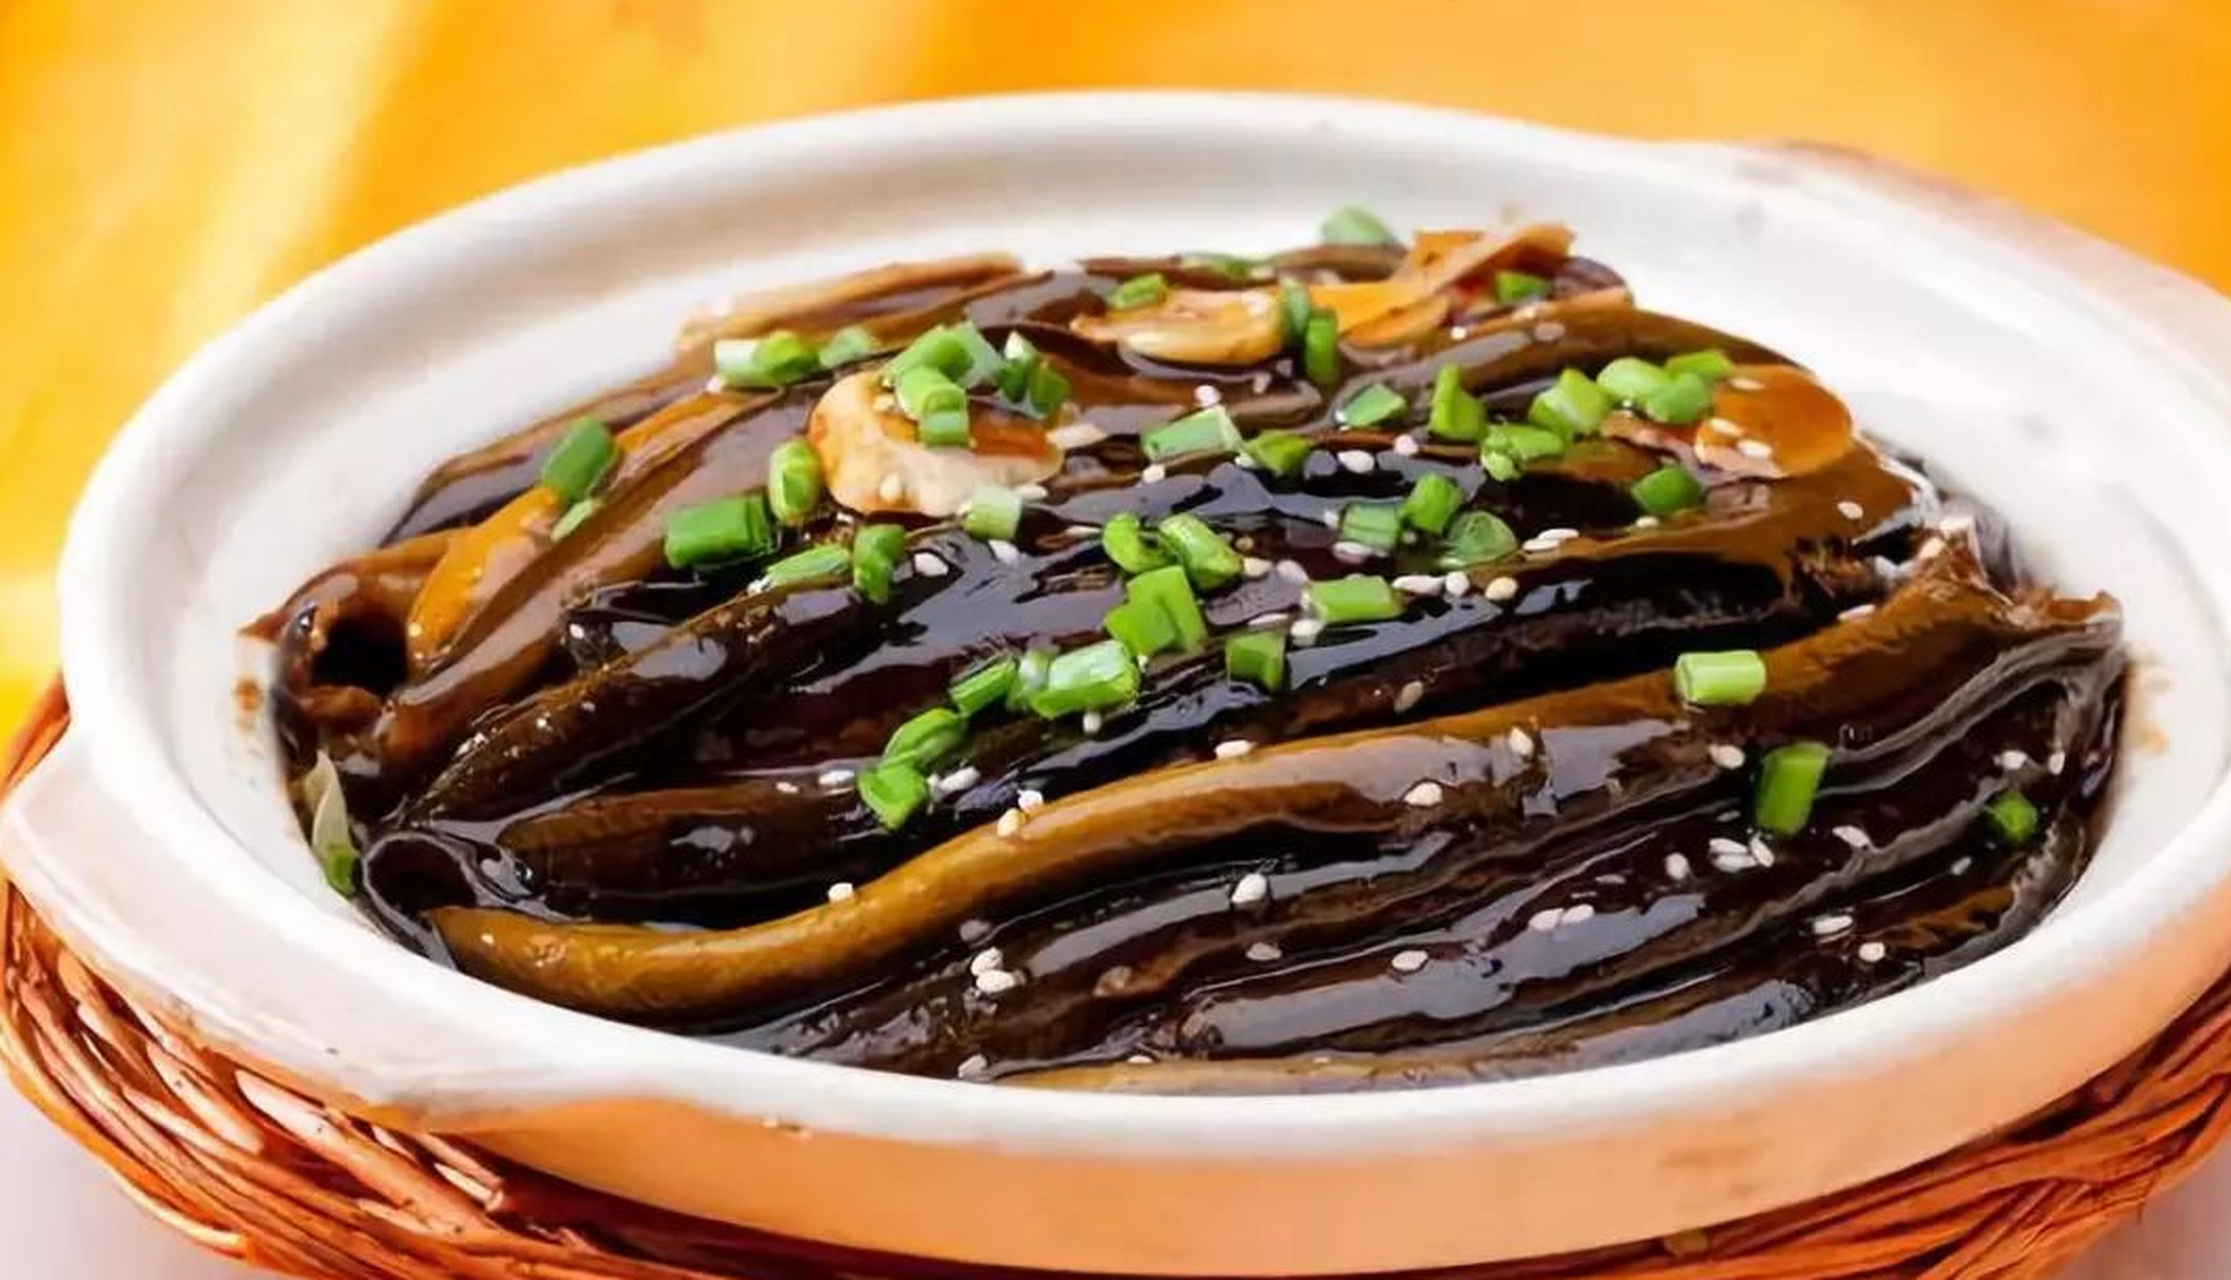 中国国宴超级好吃的经典名菜 软兜鳝鱼 软兜长鱼又称软兜鳝鱼,是